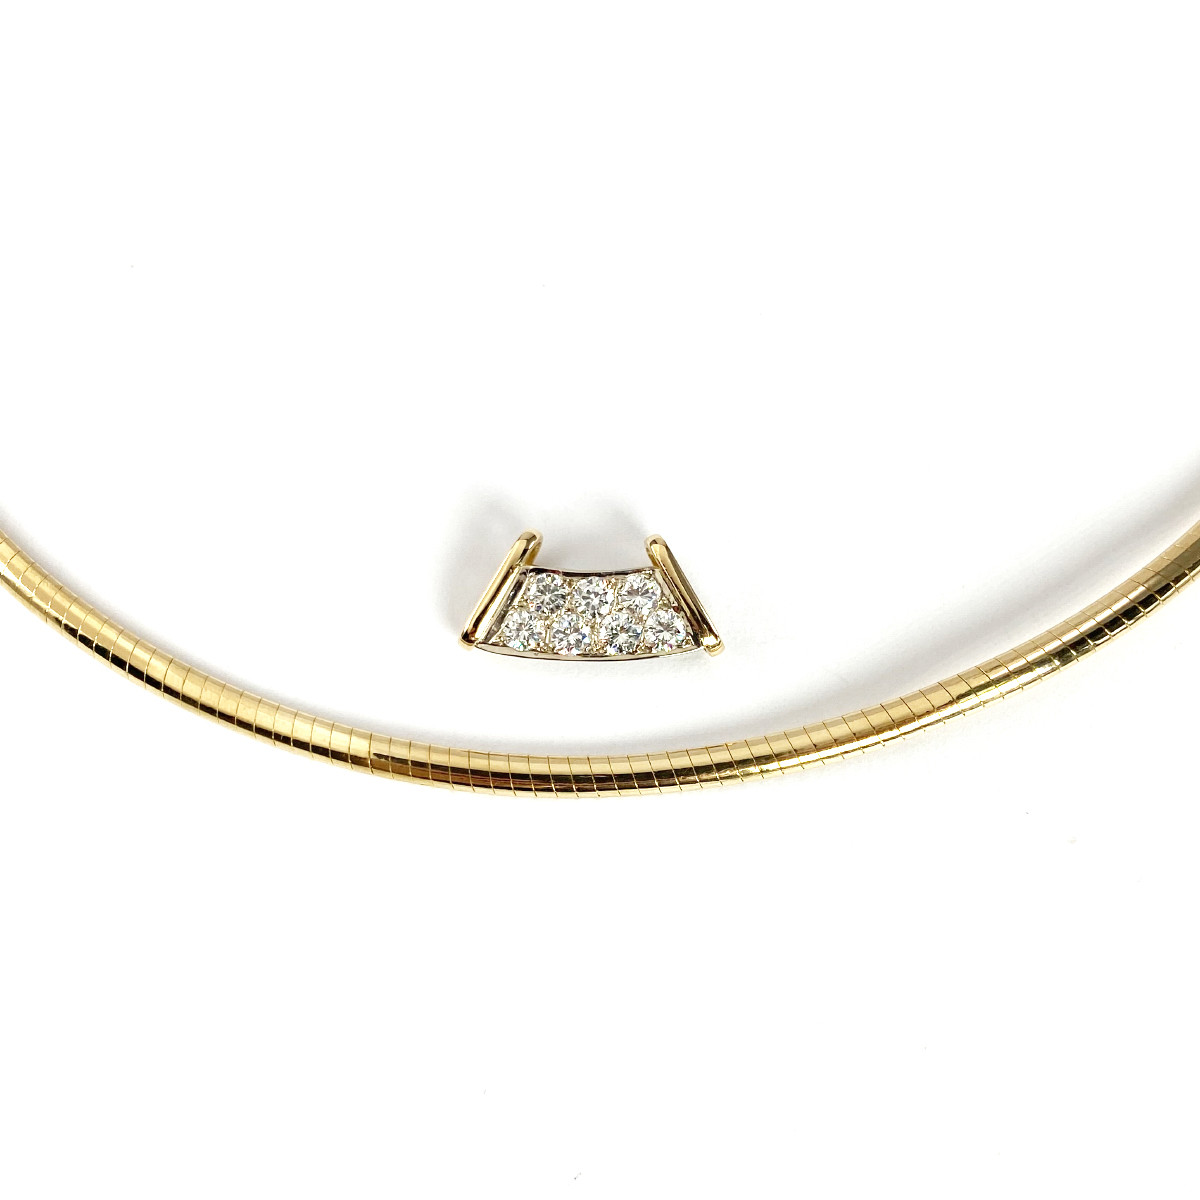 Collier cable d'occasion or 750 jaune diamants 43 cm - vue 4